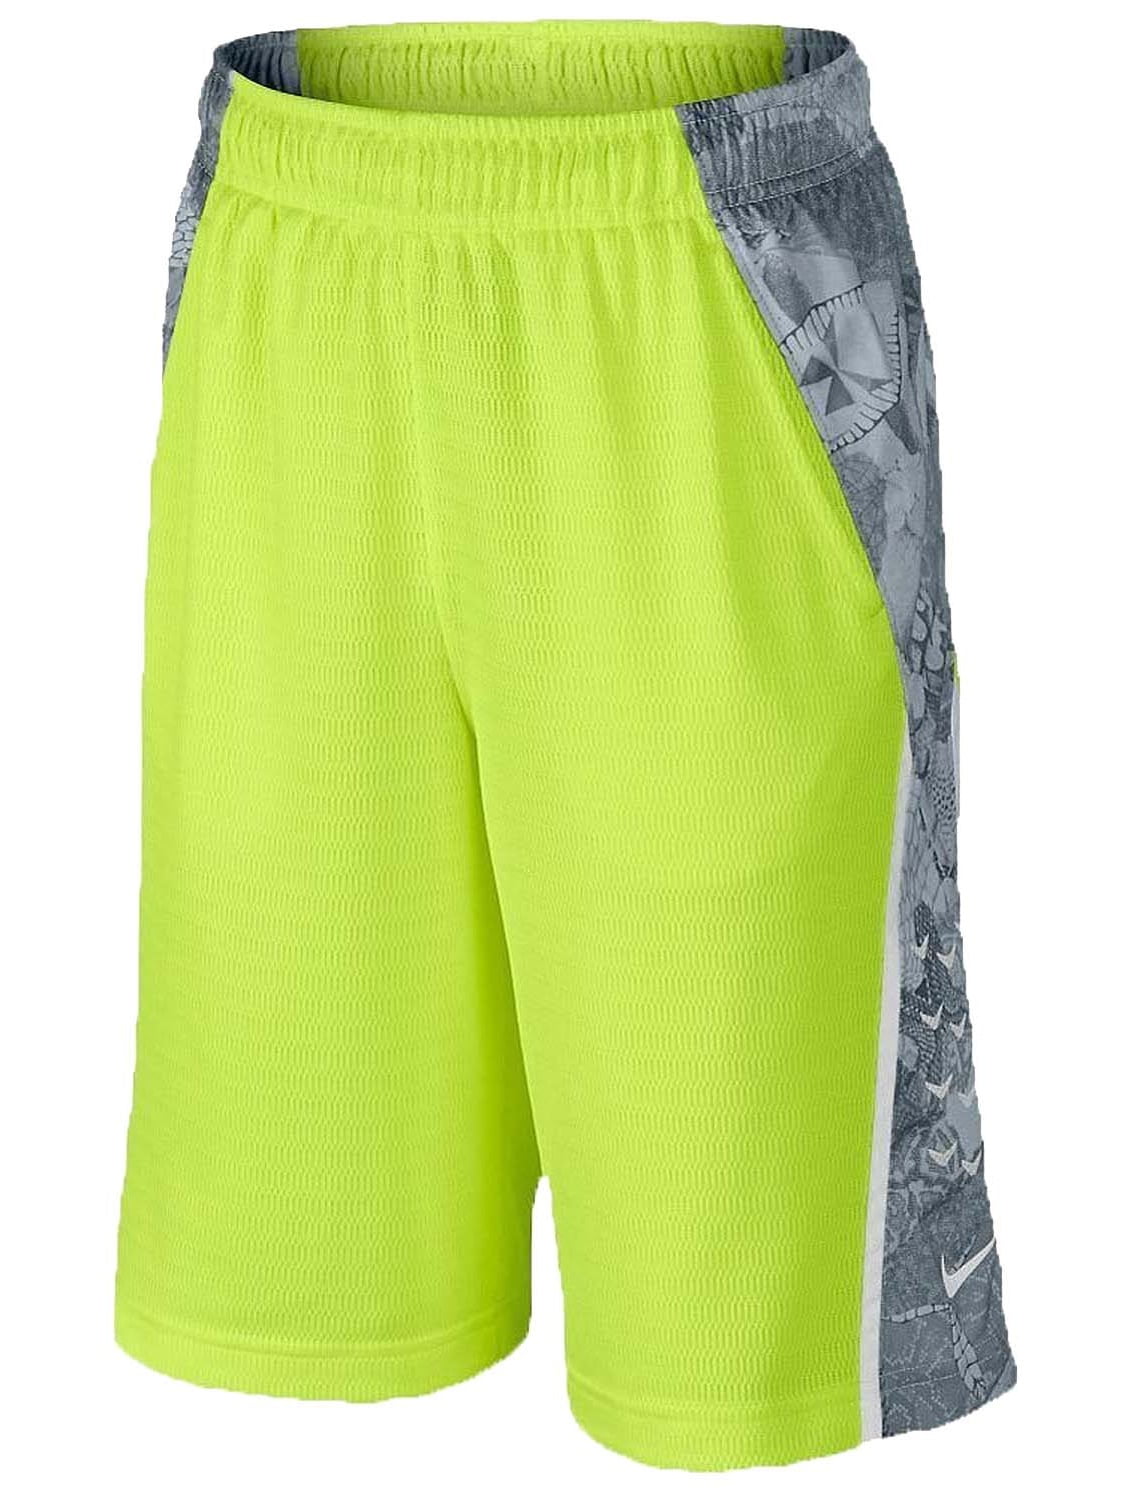 voorspelling Doen moersleutel Nike Men's Dri-Fit KOBE Emerge Elite Basketball Shorts-Volt/Wolf Grey -  Walmart.com